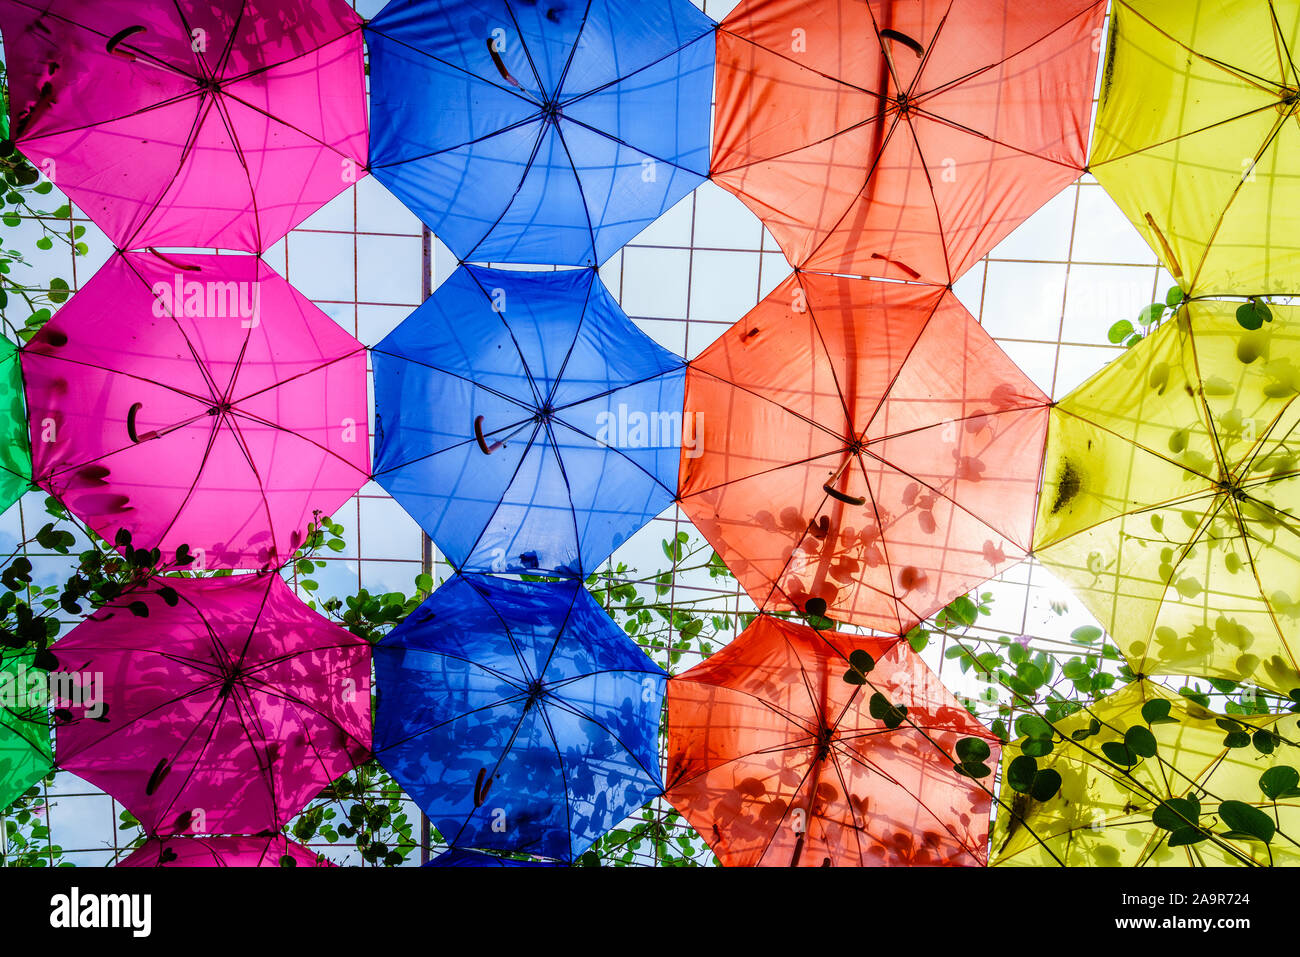 Dubaï, Émirats arabes unis, le 22 janvier 2018 : parasols à Dubaï Miracle jardin qui est l'une des principales attractions touristiques de DUBAÏ, ÉMIRATS ARABES UNIS Banque D'Images